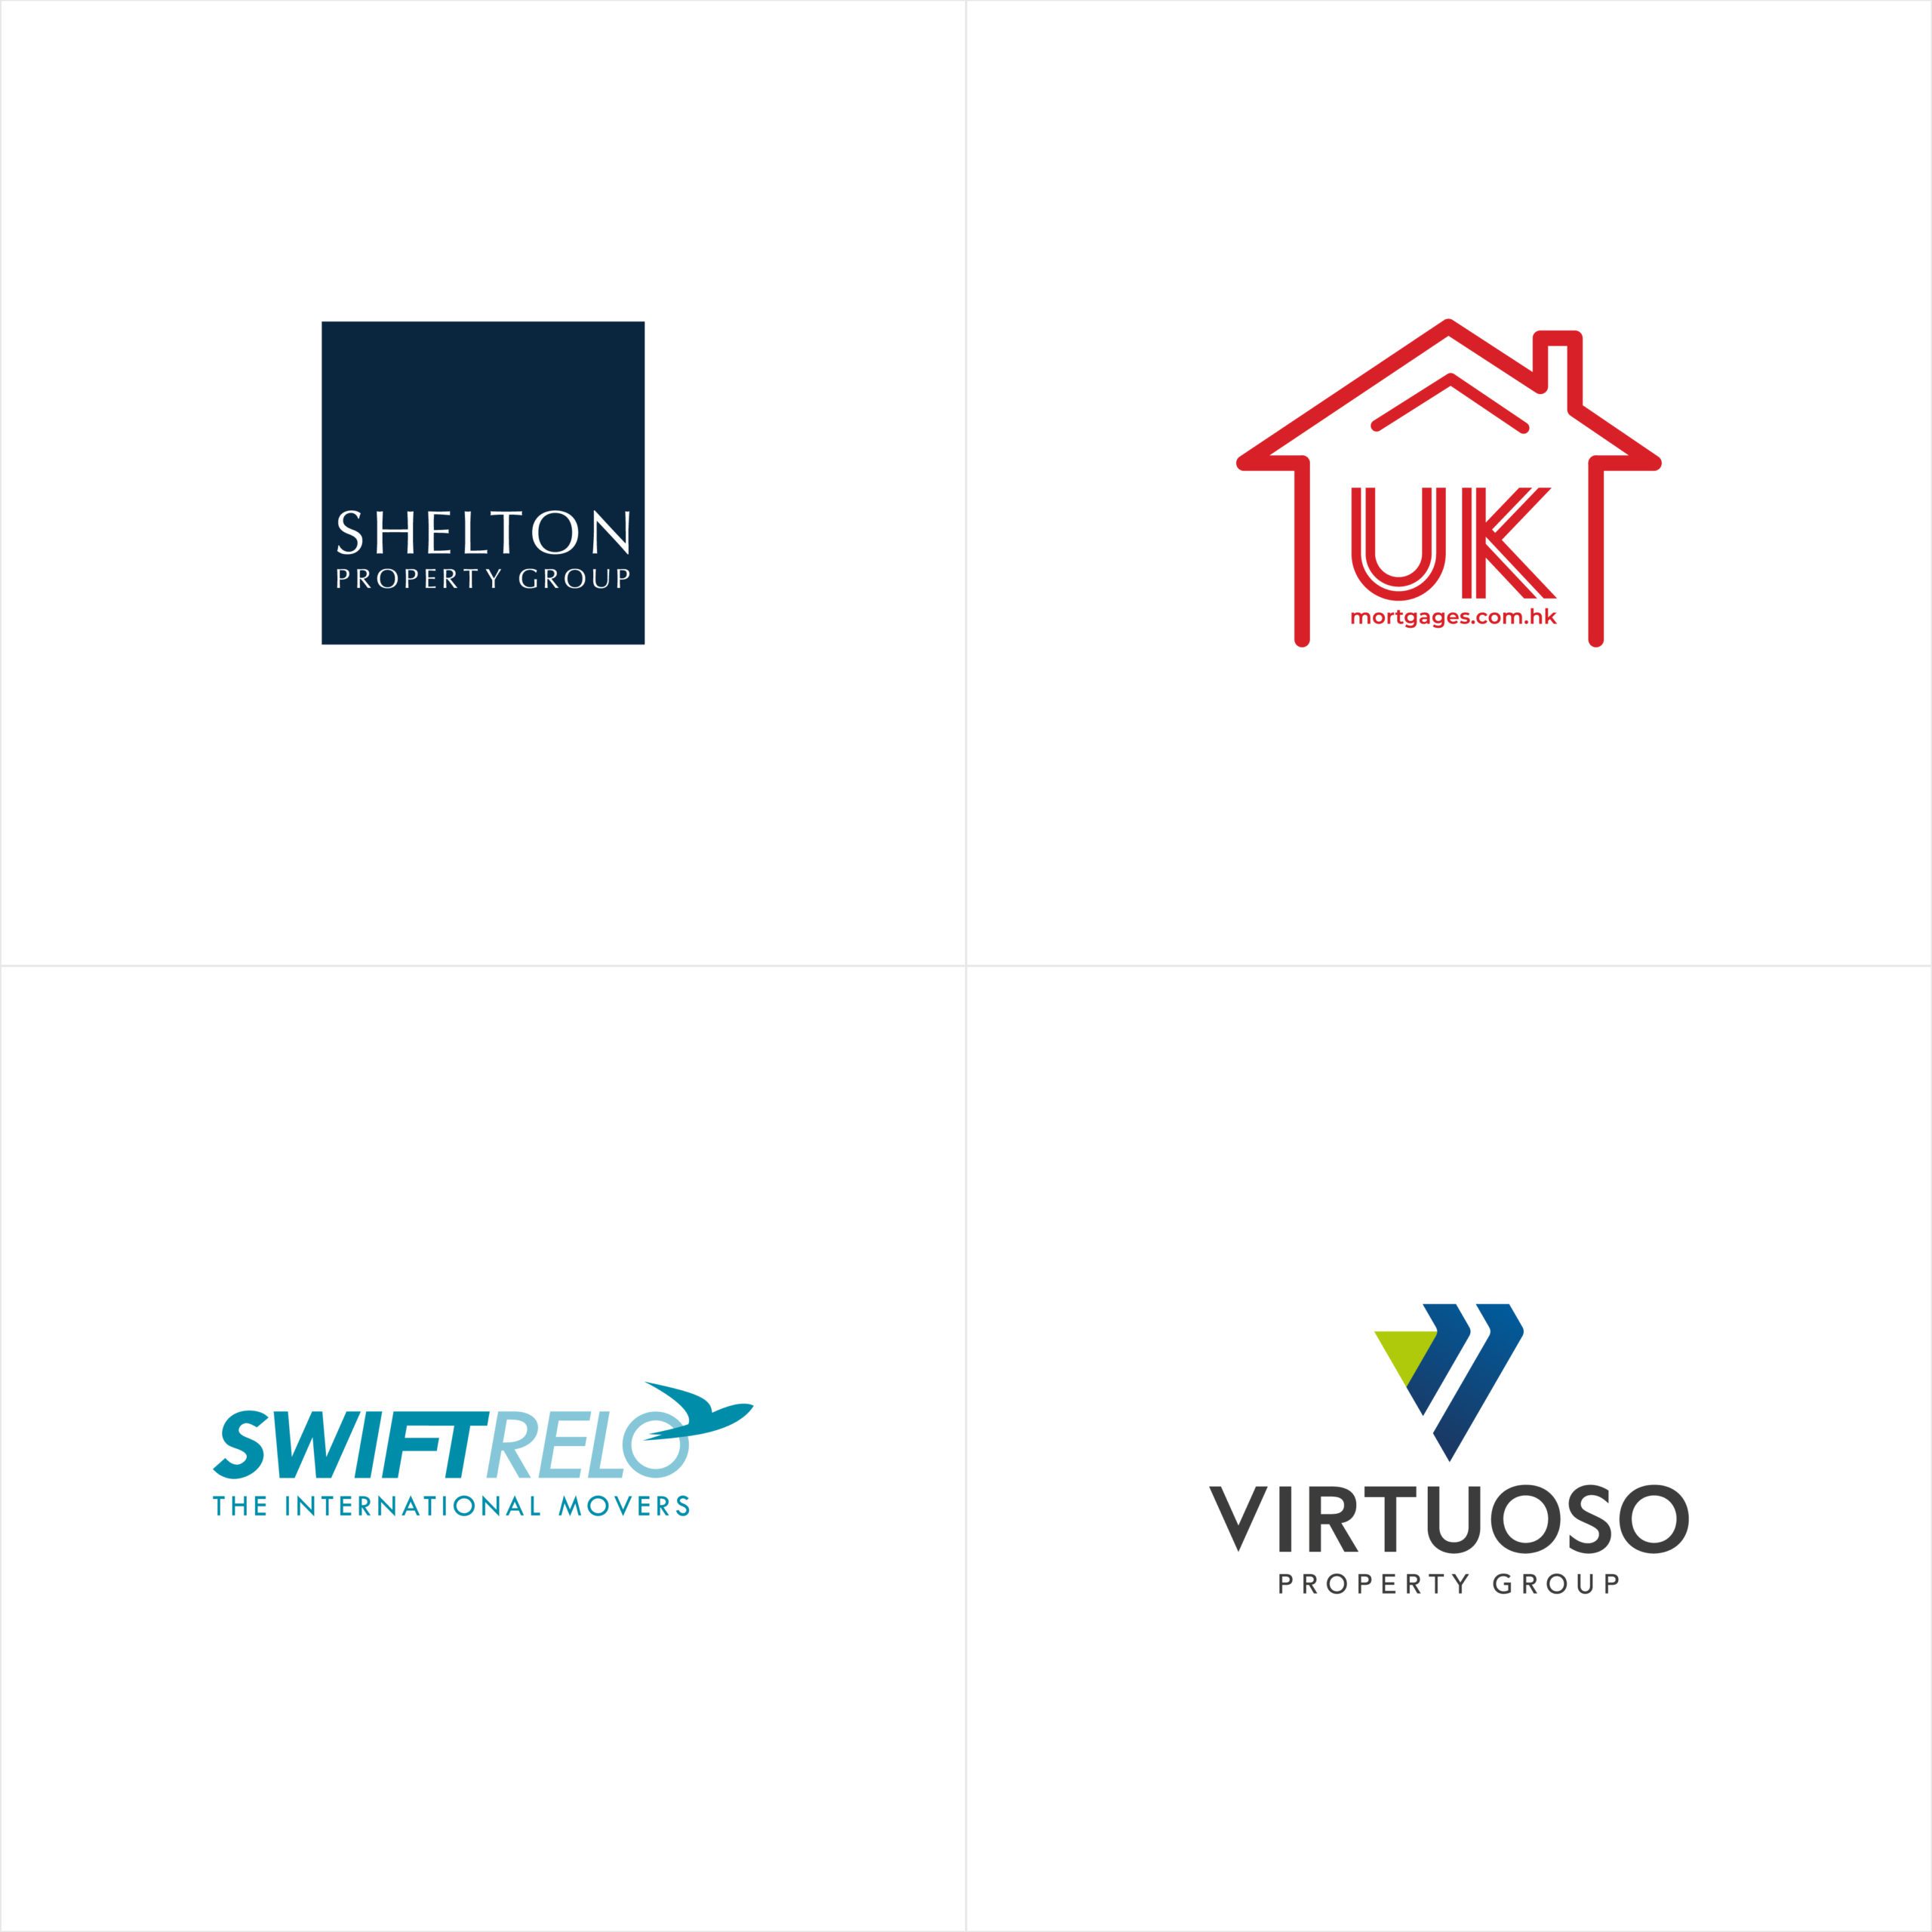 Shelton Property Group UK Mortgages.com.hk Swiftrelo virtuoso logo